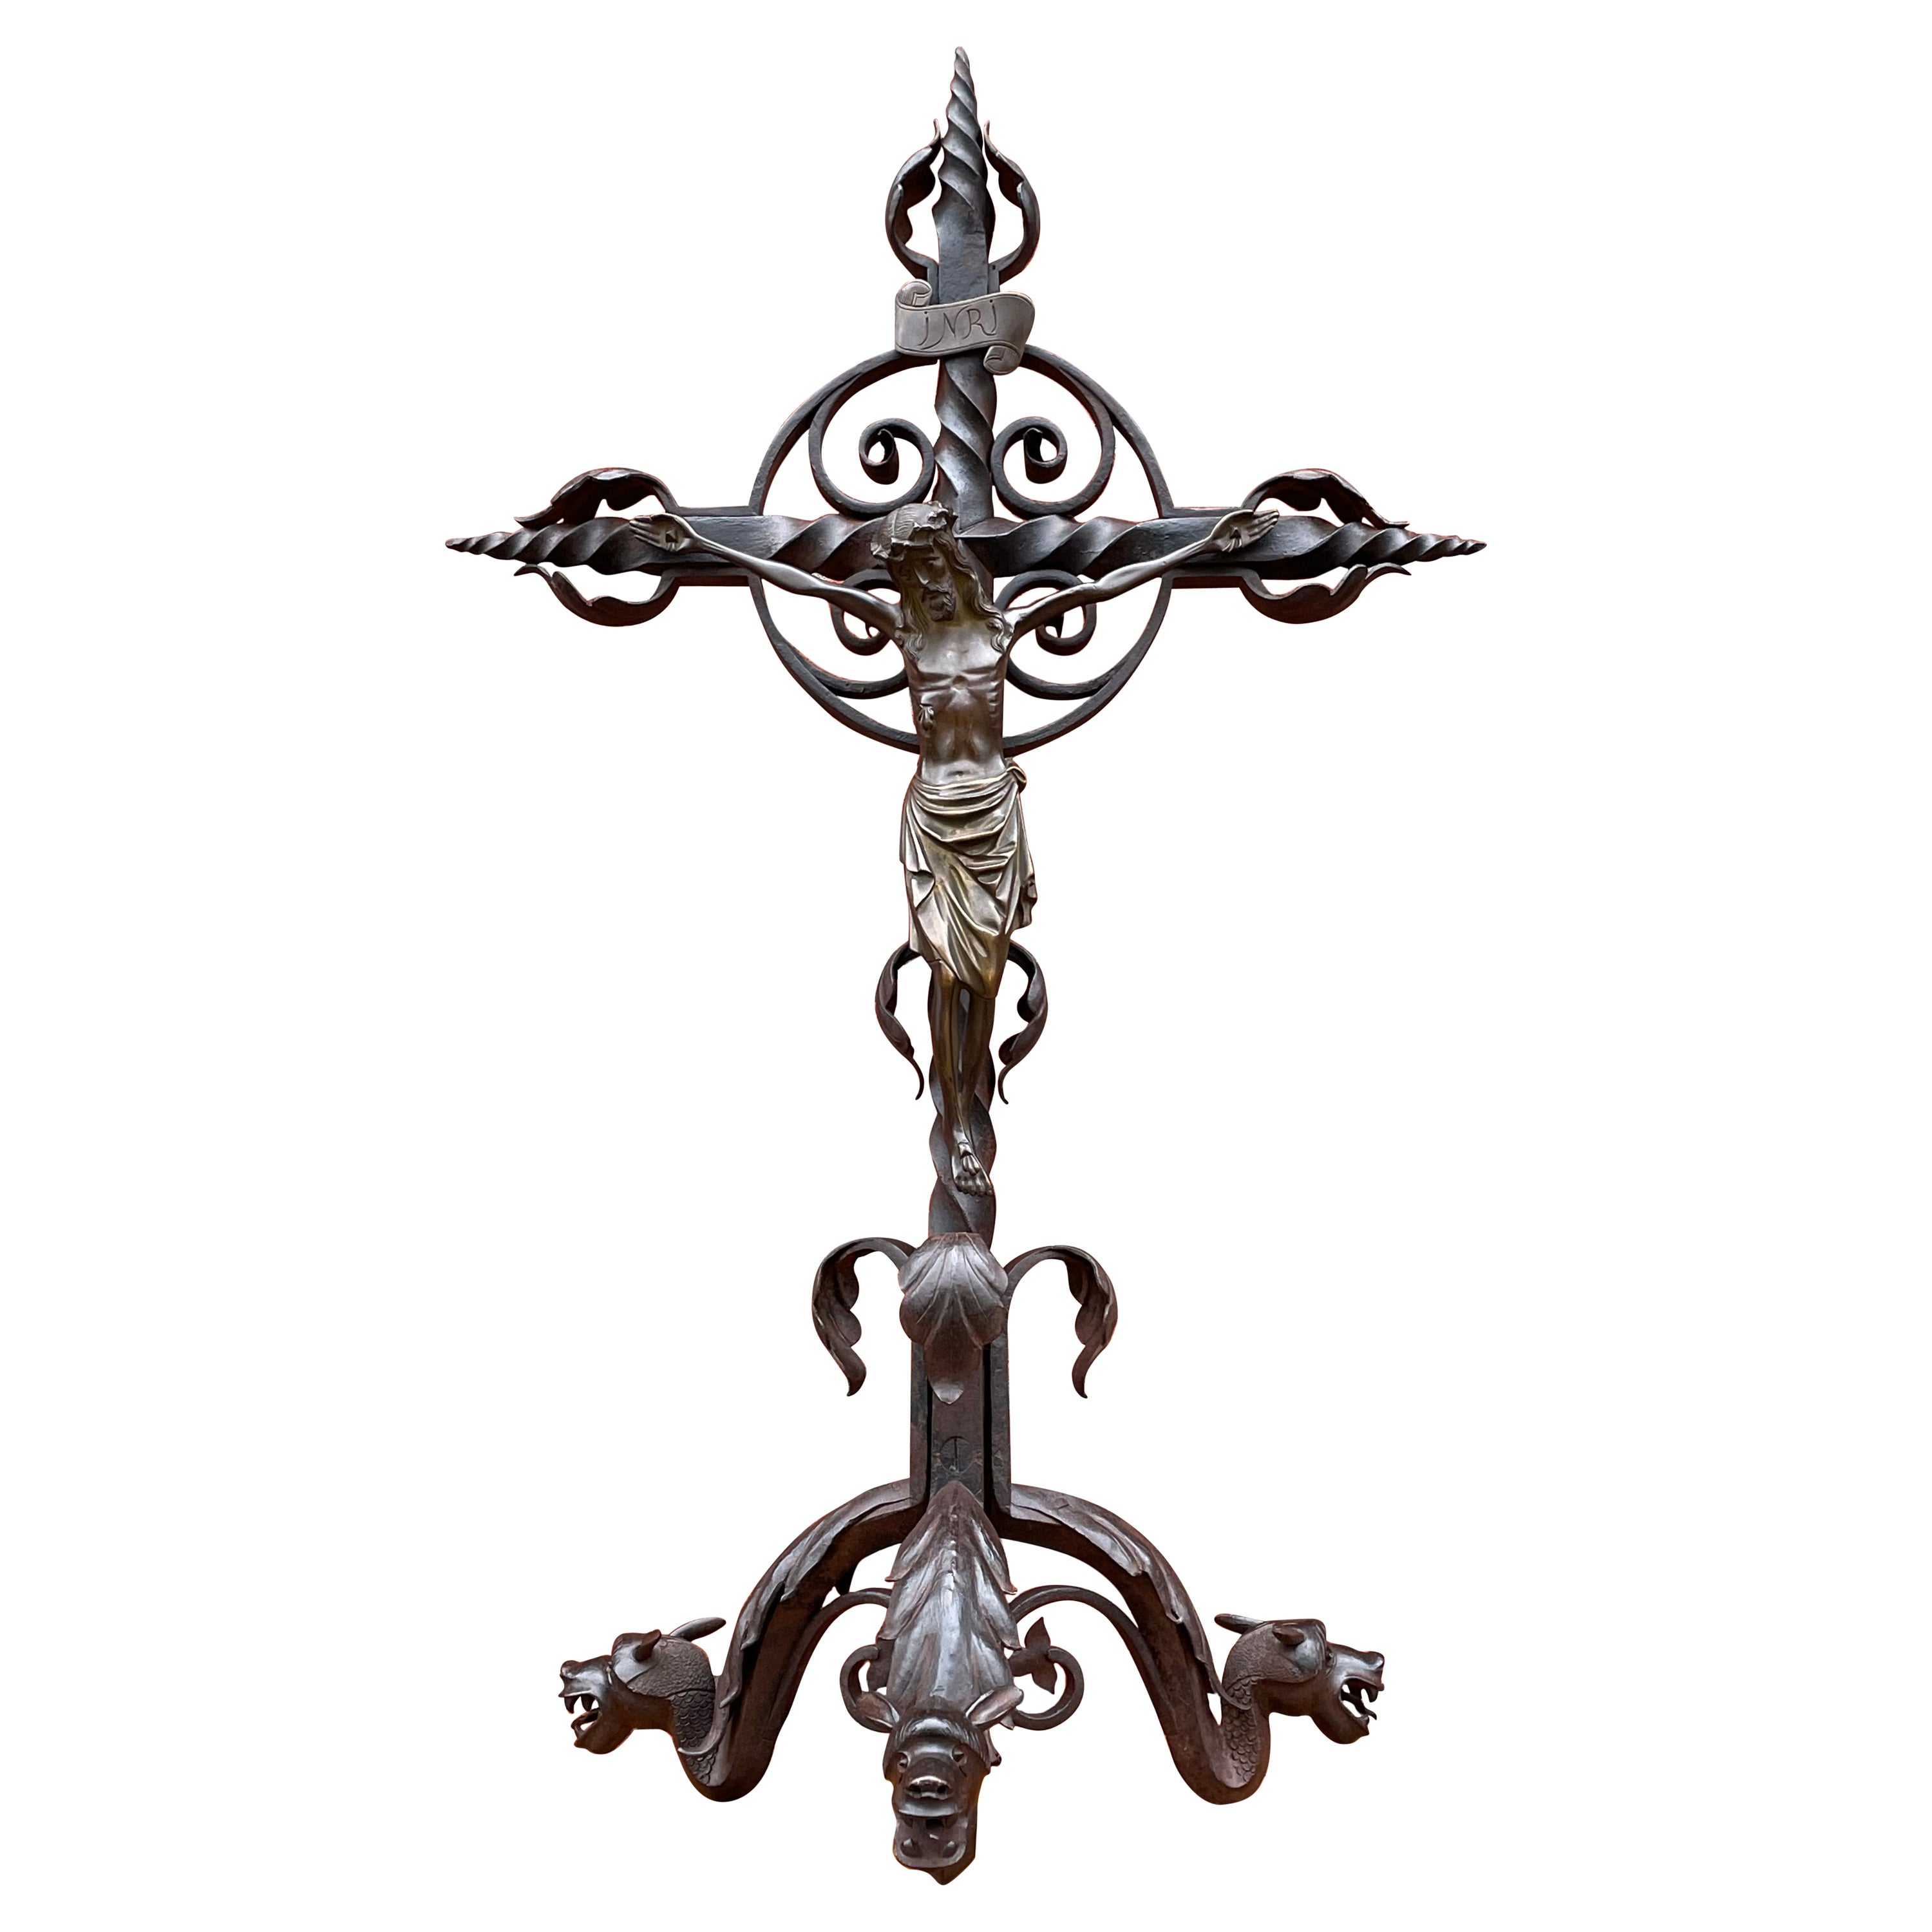 Schmiedeeisernes Altarkreuz mit Drachensockel und Bronzeskulptur des Christus aus der Gotik